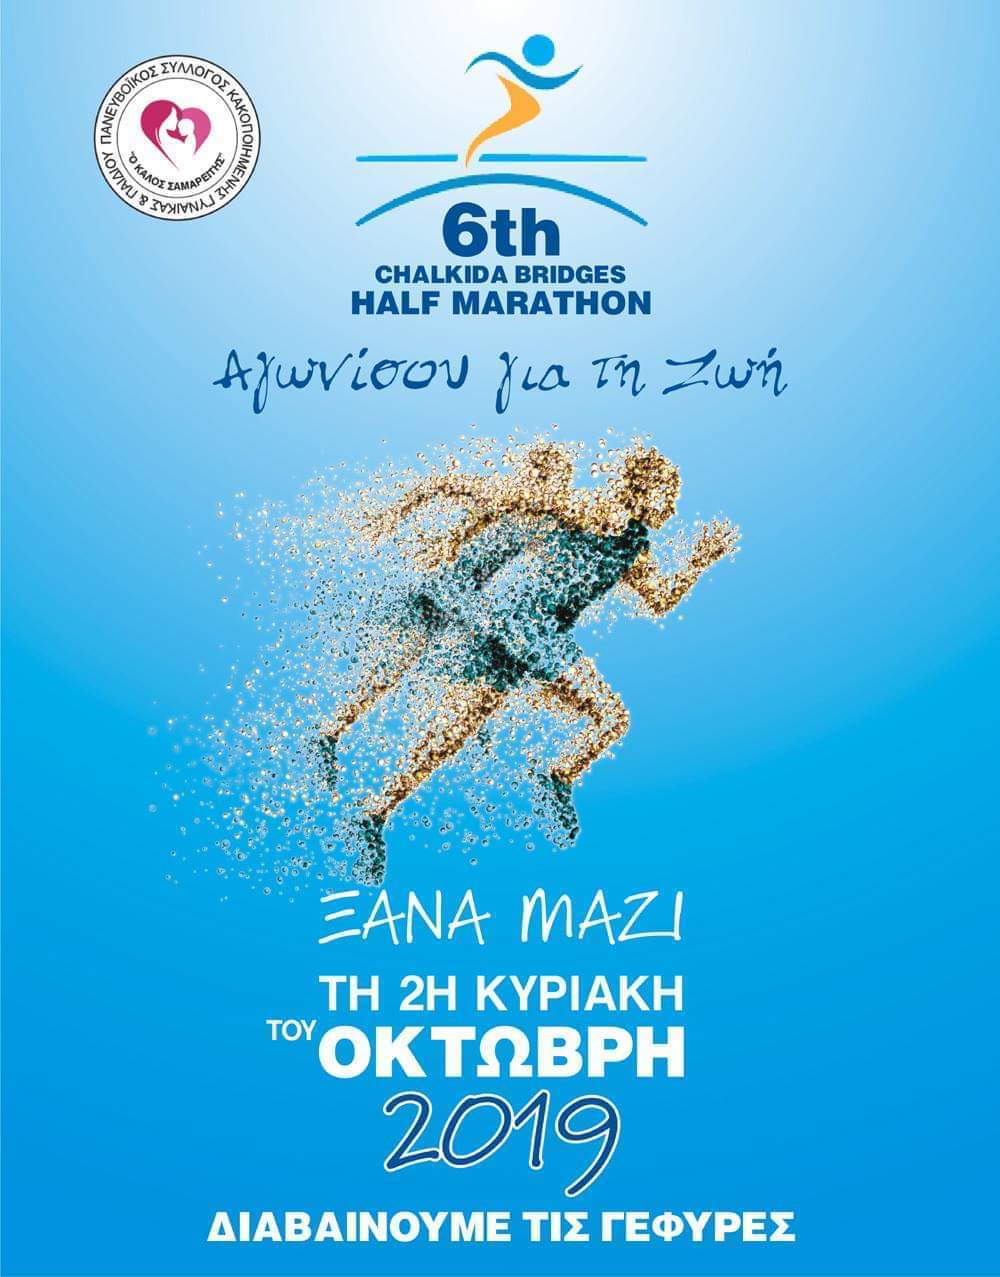 Chalkida Bridges Half Marathon 2019